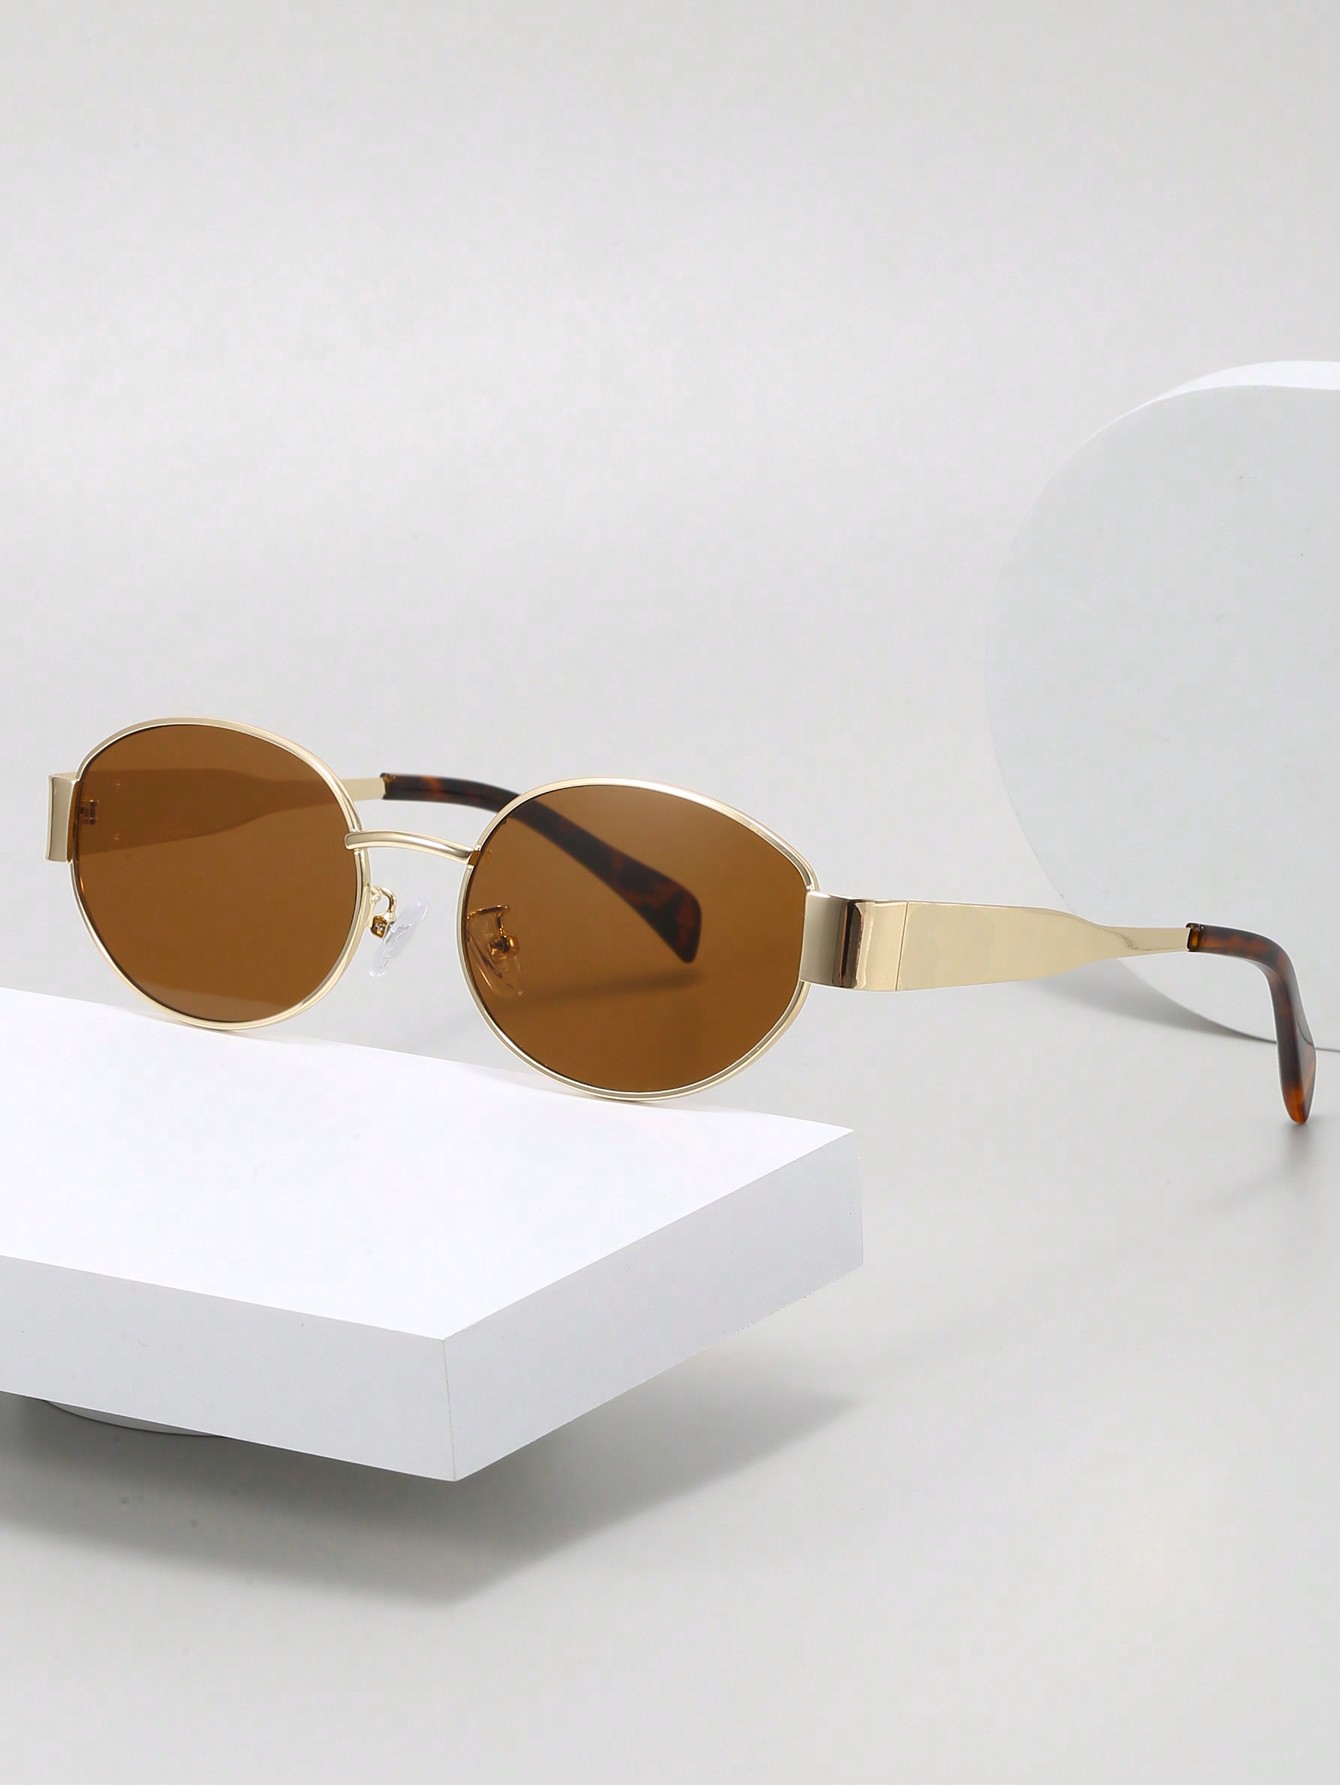 1шт женские винтажные маленькие овальные солнцезащитные очки в индивидуальной оправе стразы стеклянные овальные в оправе пришивные размер 1 5 1 3 см цвет сиреневый прозрачный 5 штук упак